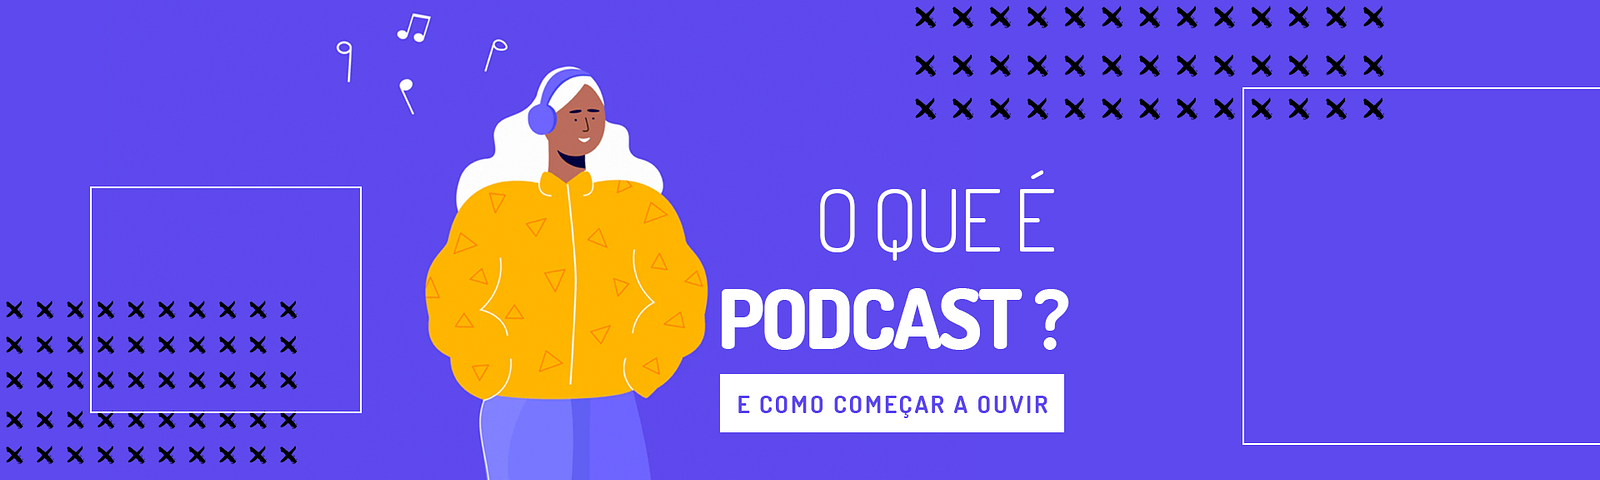 Mulher feliz com fone de ouvido e o título: "O que é podcast? E como começar a ouvir". Link para o site euamopodcast.com.br